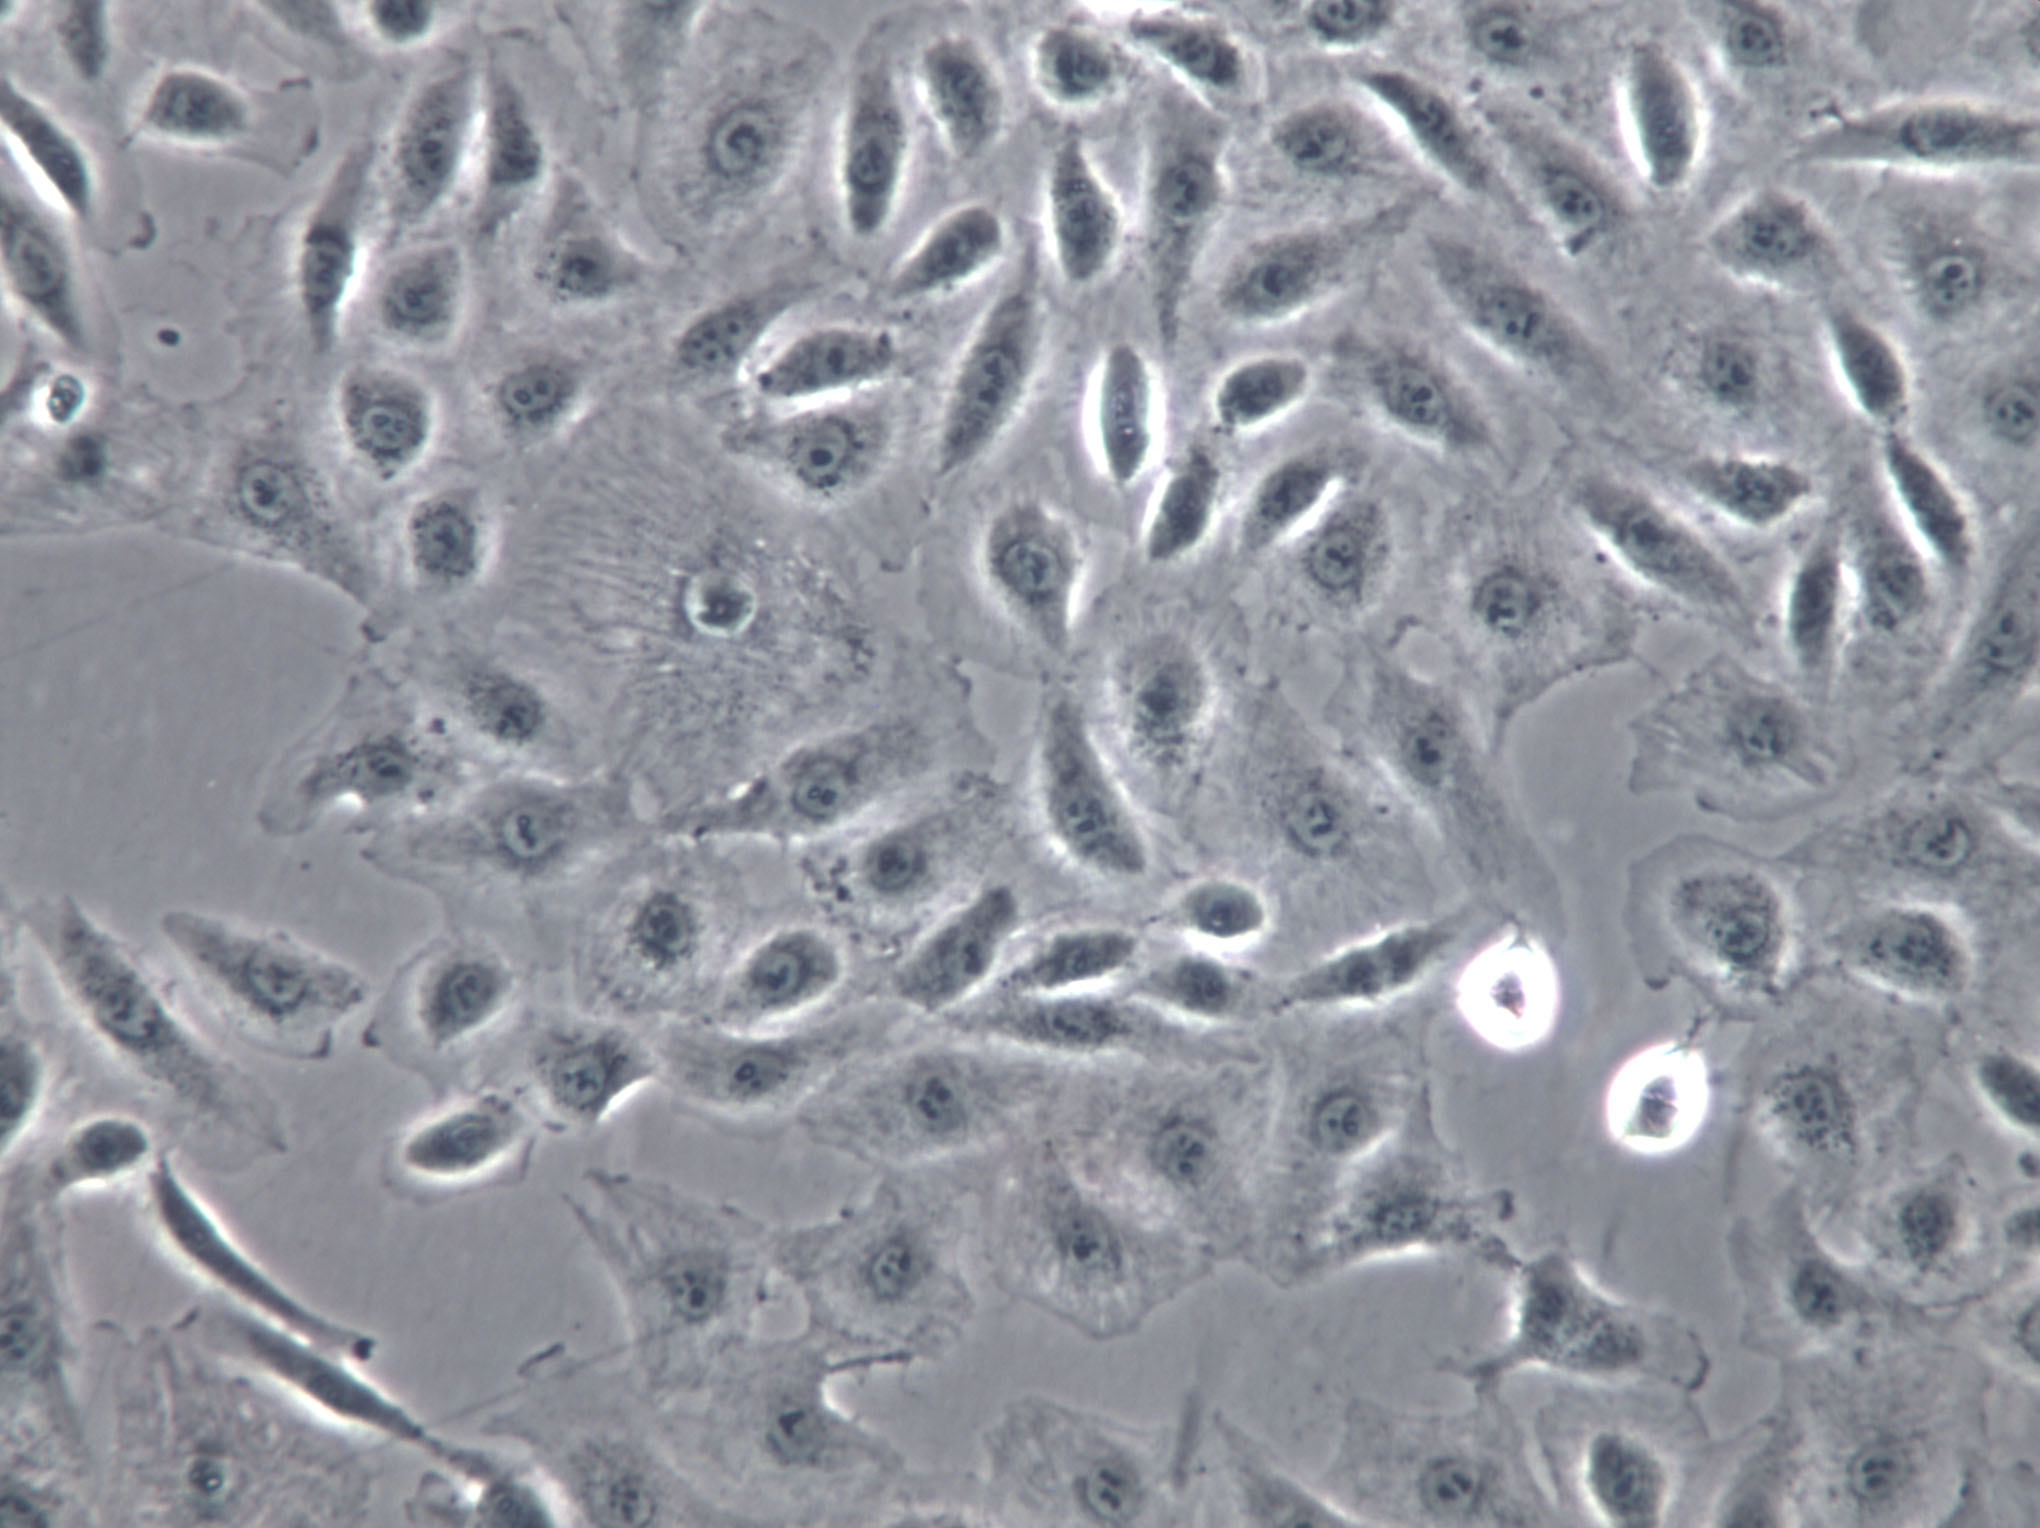 SNU-601 Cells|人胃癌克隆细胞